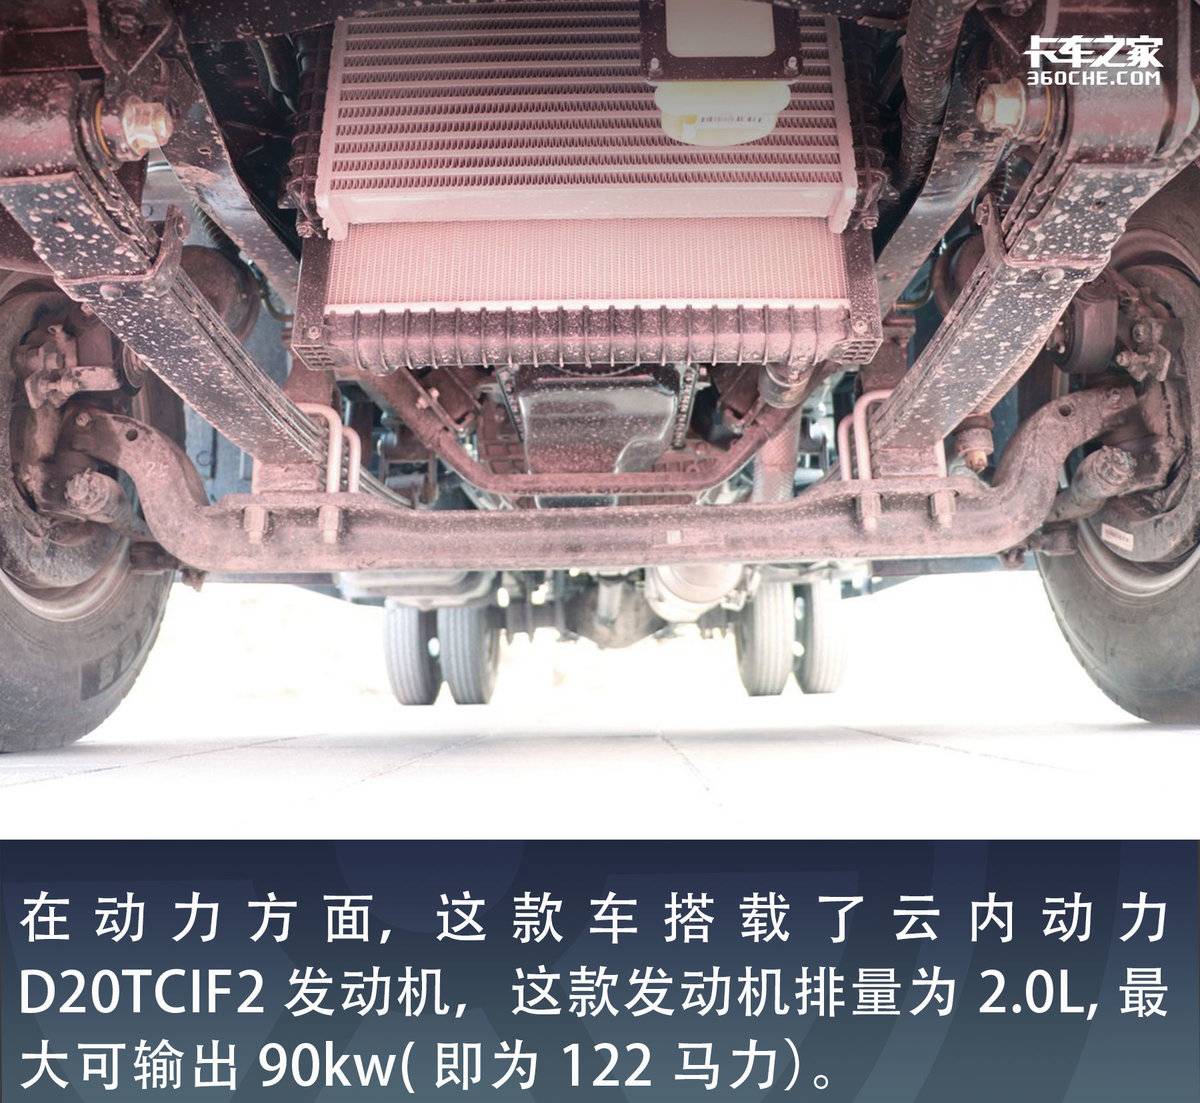 自重仅1.8吨 可选装气囊座椅  欧马可S1打造高端轻卡的标杆车型